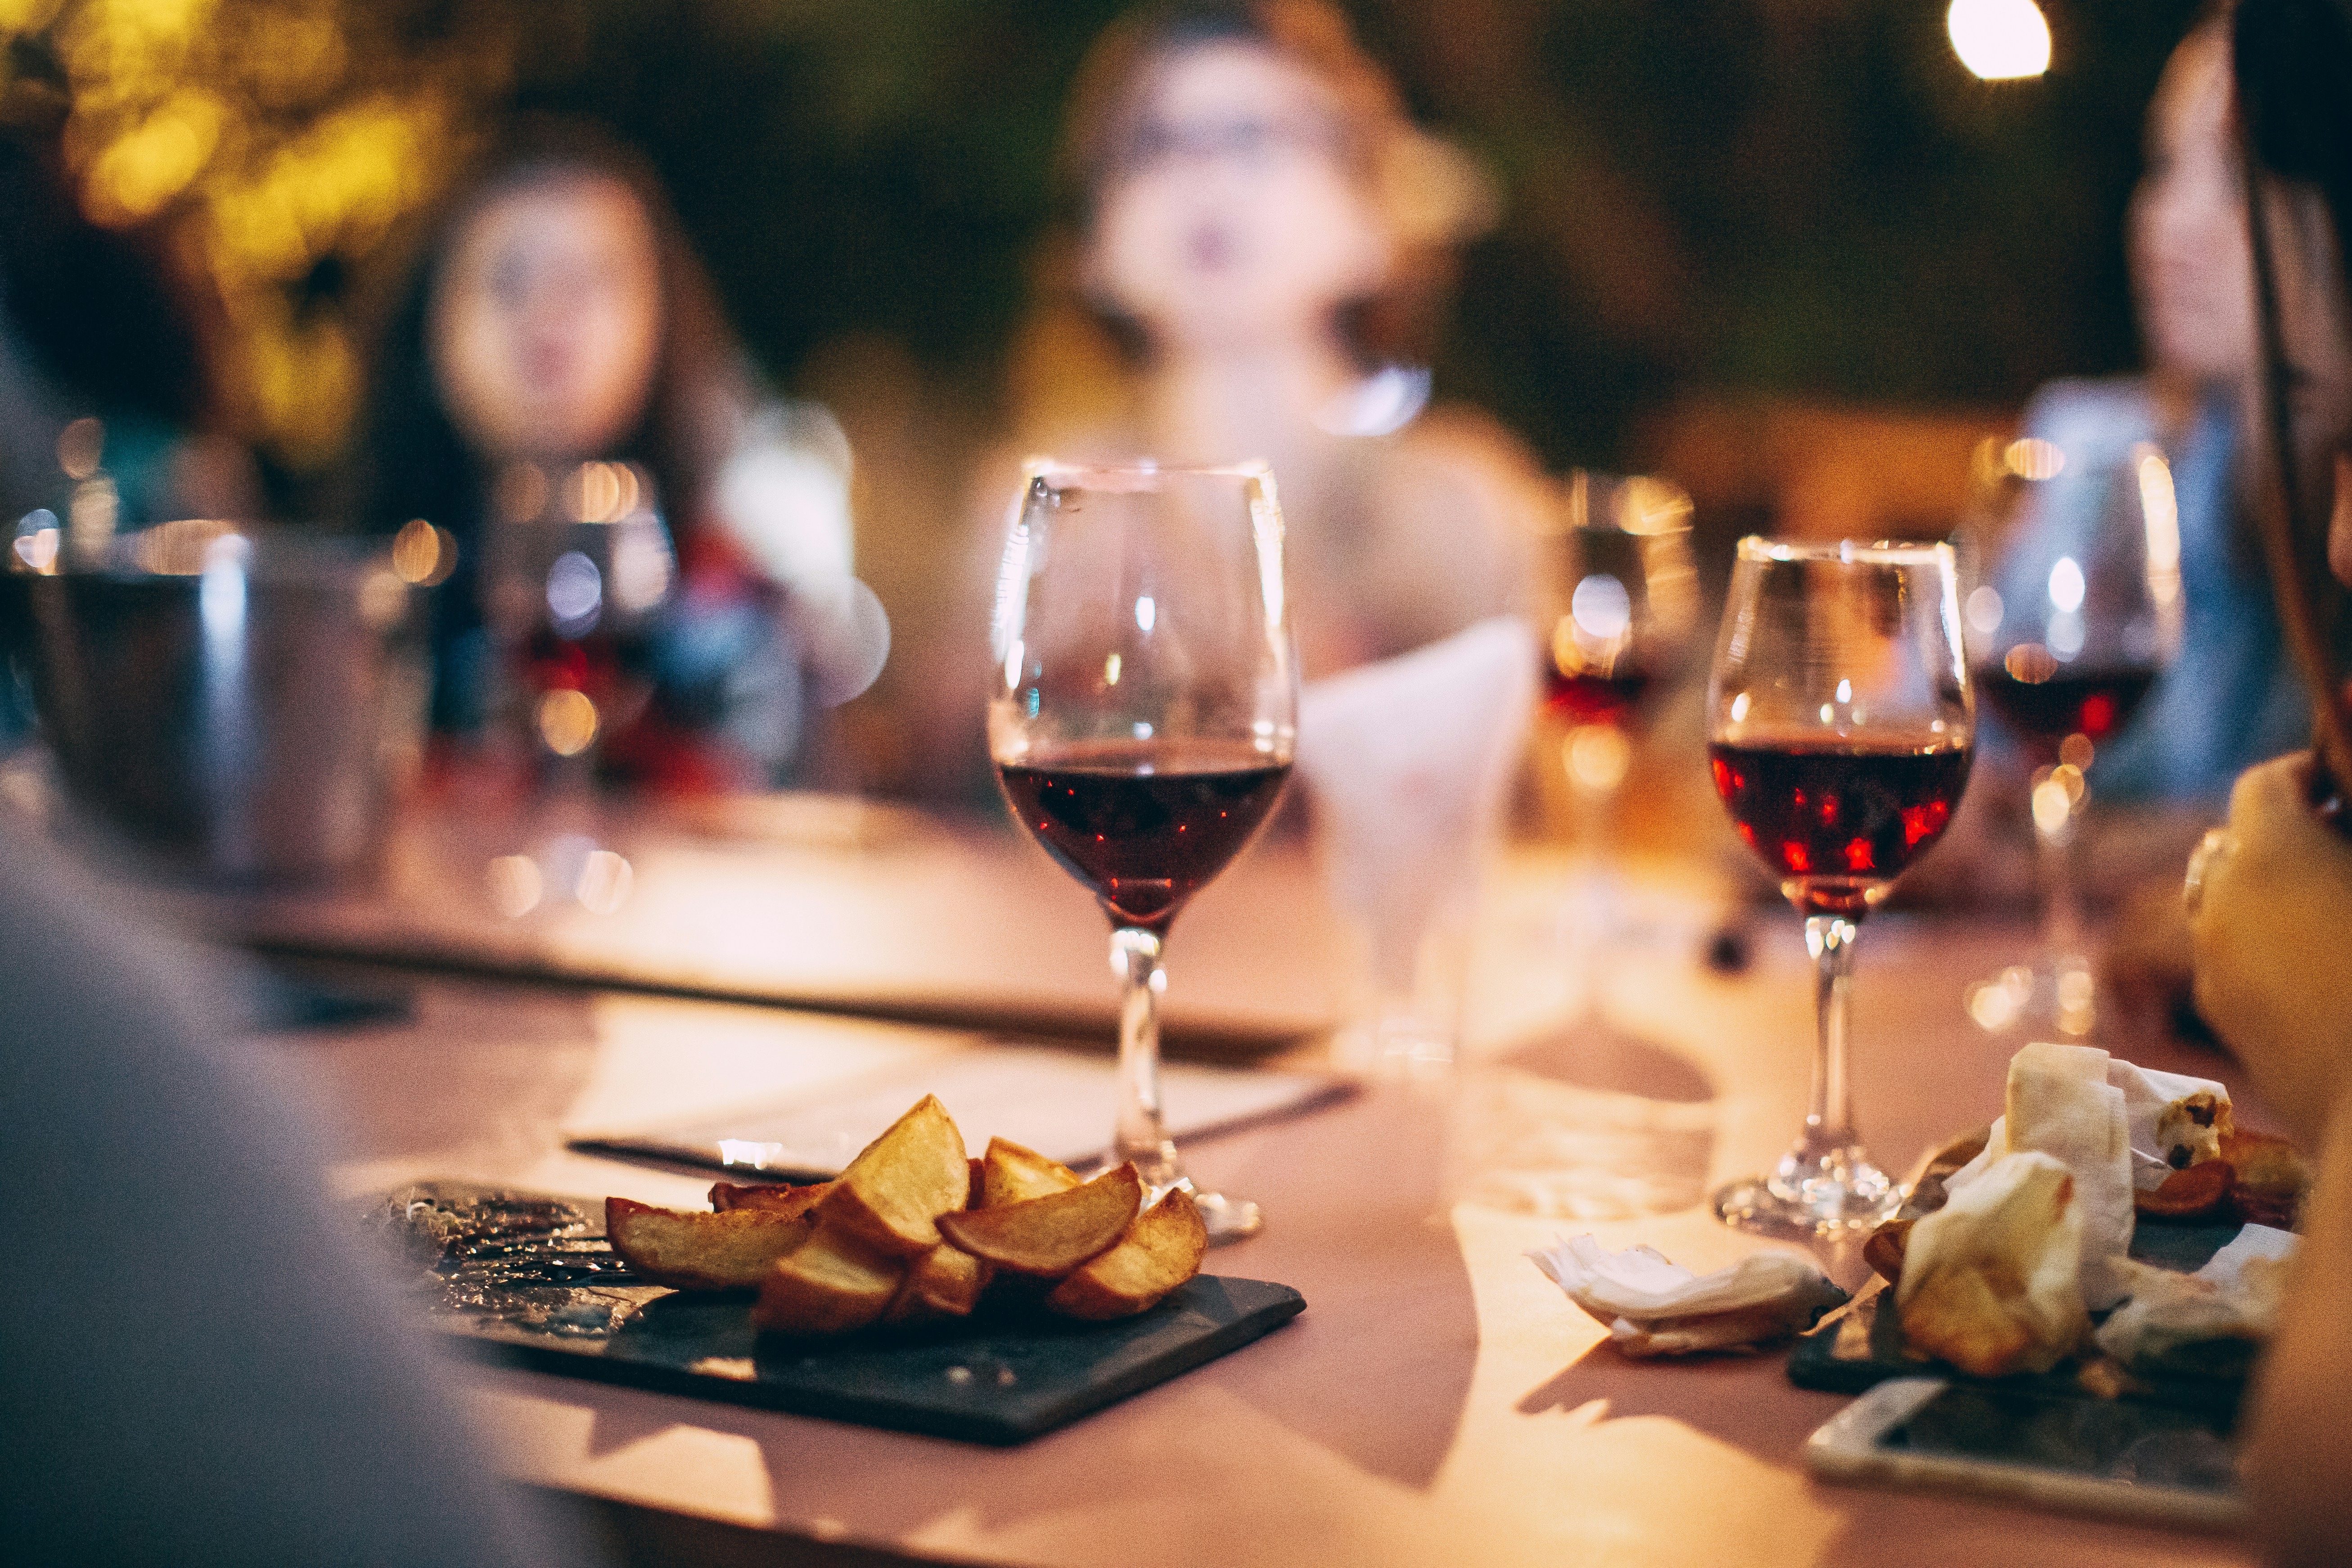 découvrez une sélection de vins rouges élégants et raffinés pour accompagner vos repas et célébrations. parcourez notre gamme de vins rouges et trouvez celui qui vous séduira.